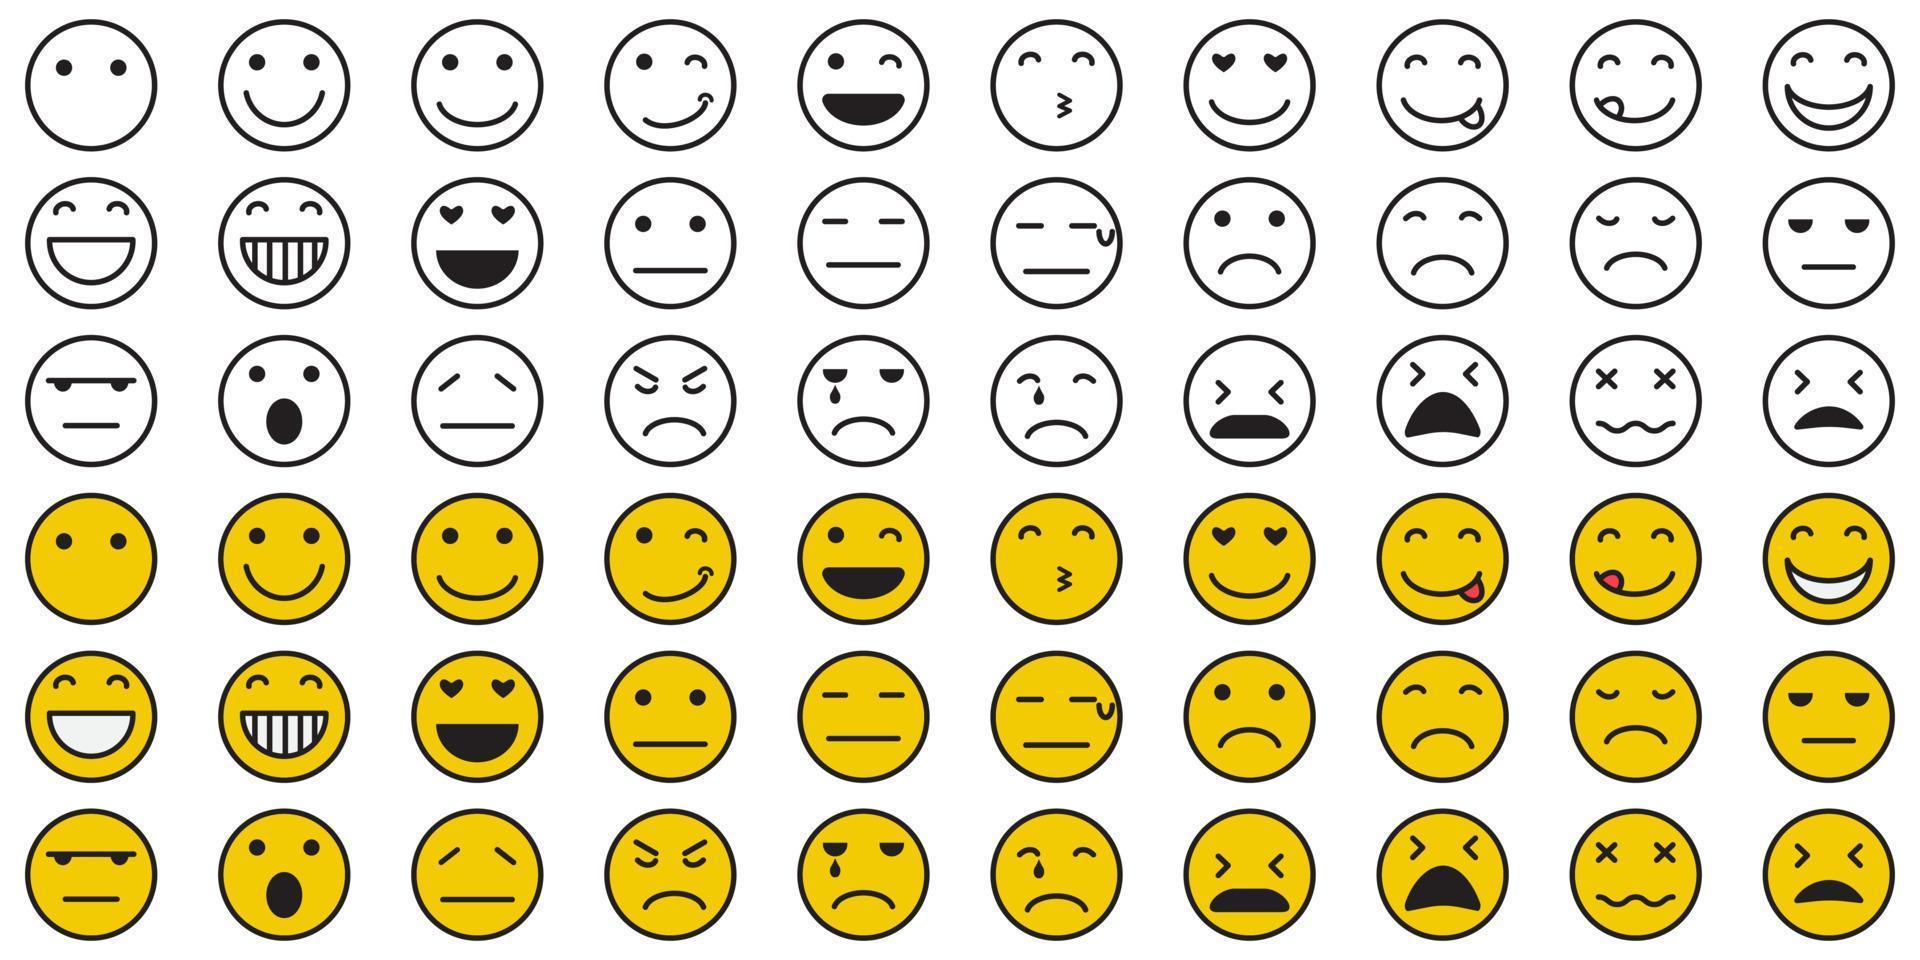 uppsättning av tecknade uttryckssymboler. emoji-ikoner. sociala medier uttryckssymbol leende. gula ansikten som uttrycker känslor. vektor illustration.